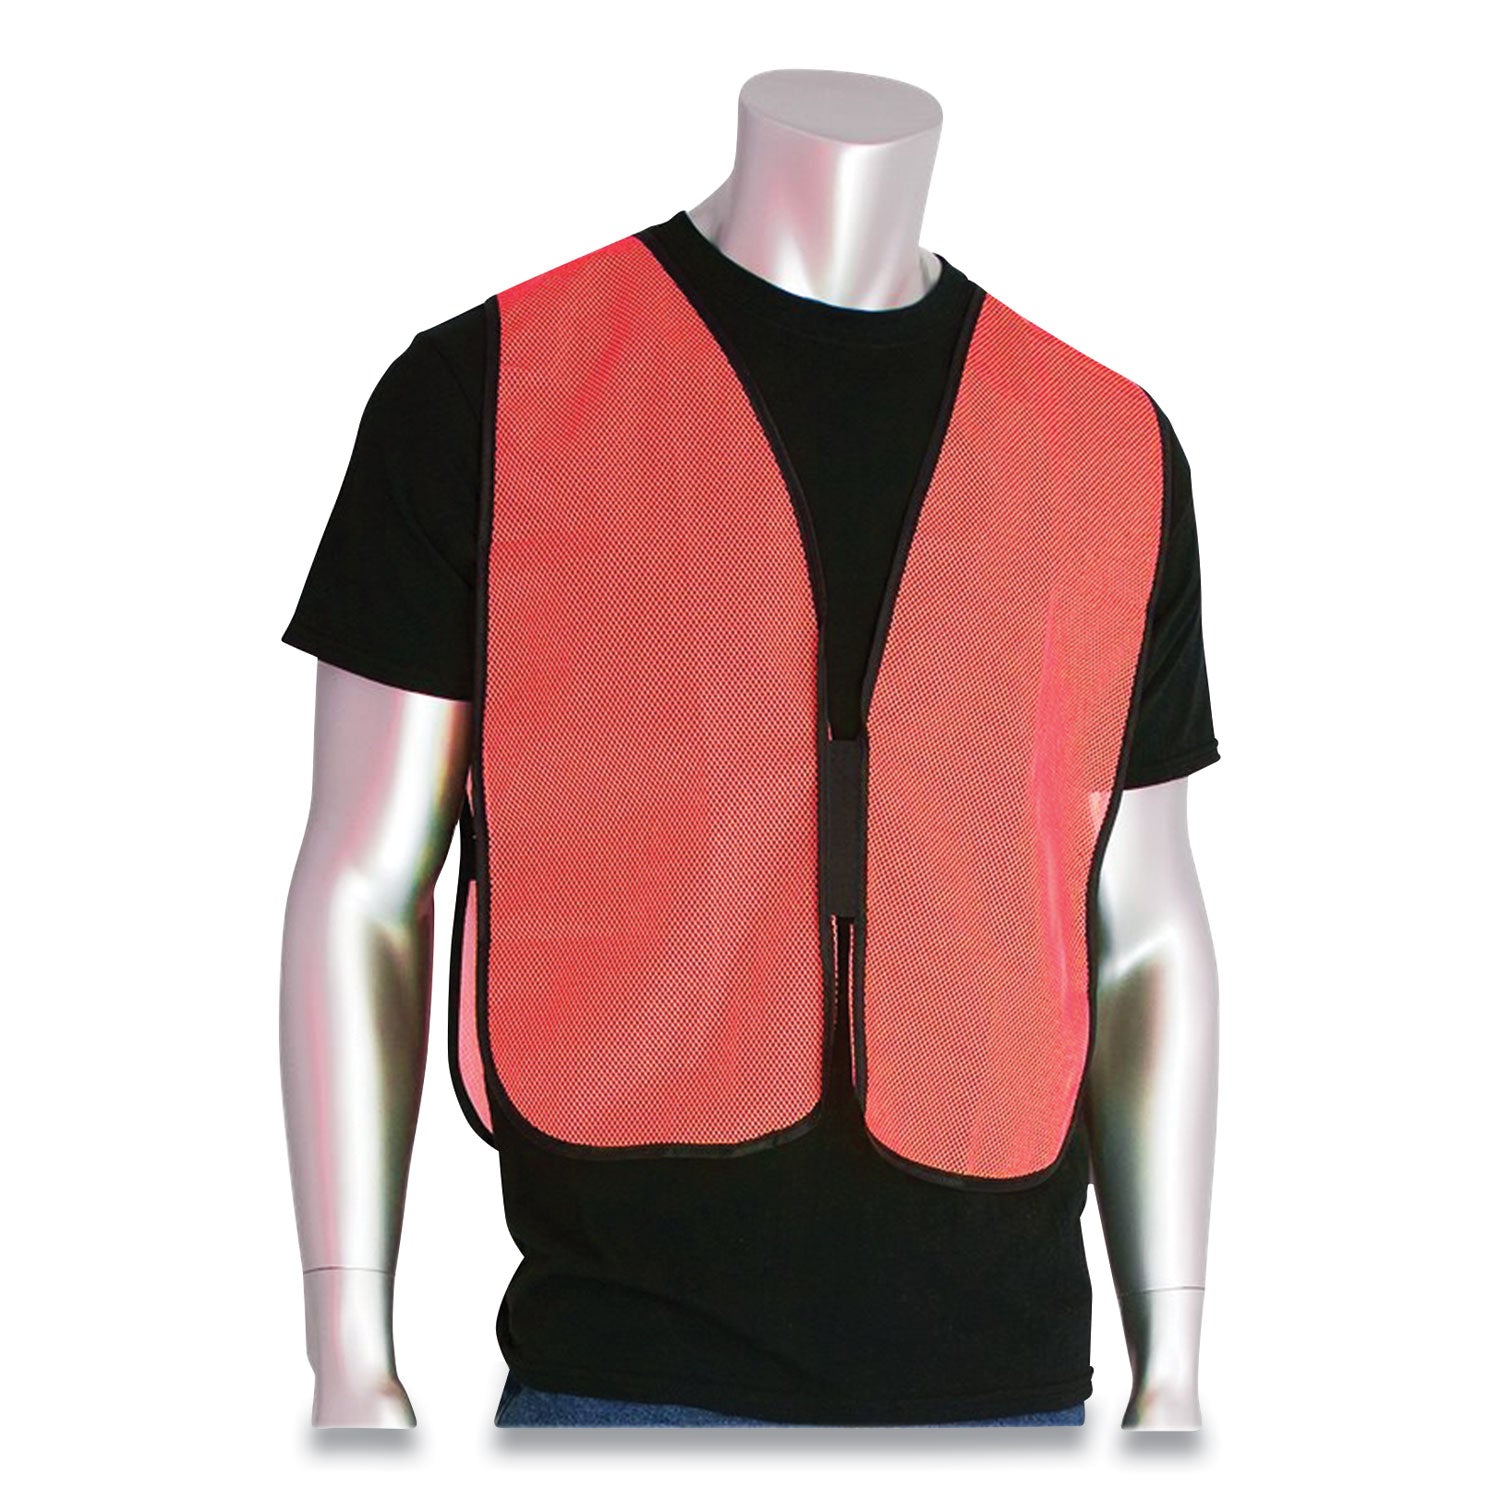 hook-and-loop-safety-vest-one-size-fits-most-hi-viz-orange_pid3000800or - 2